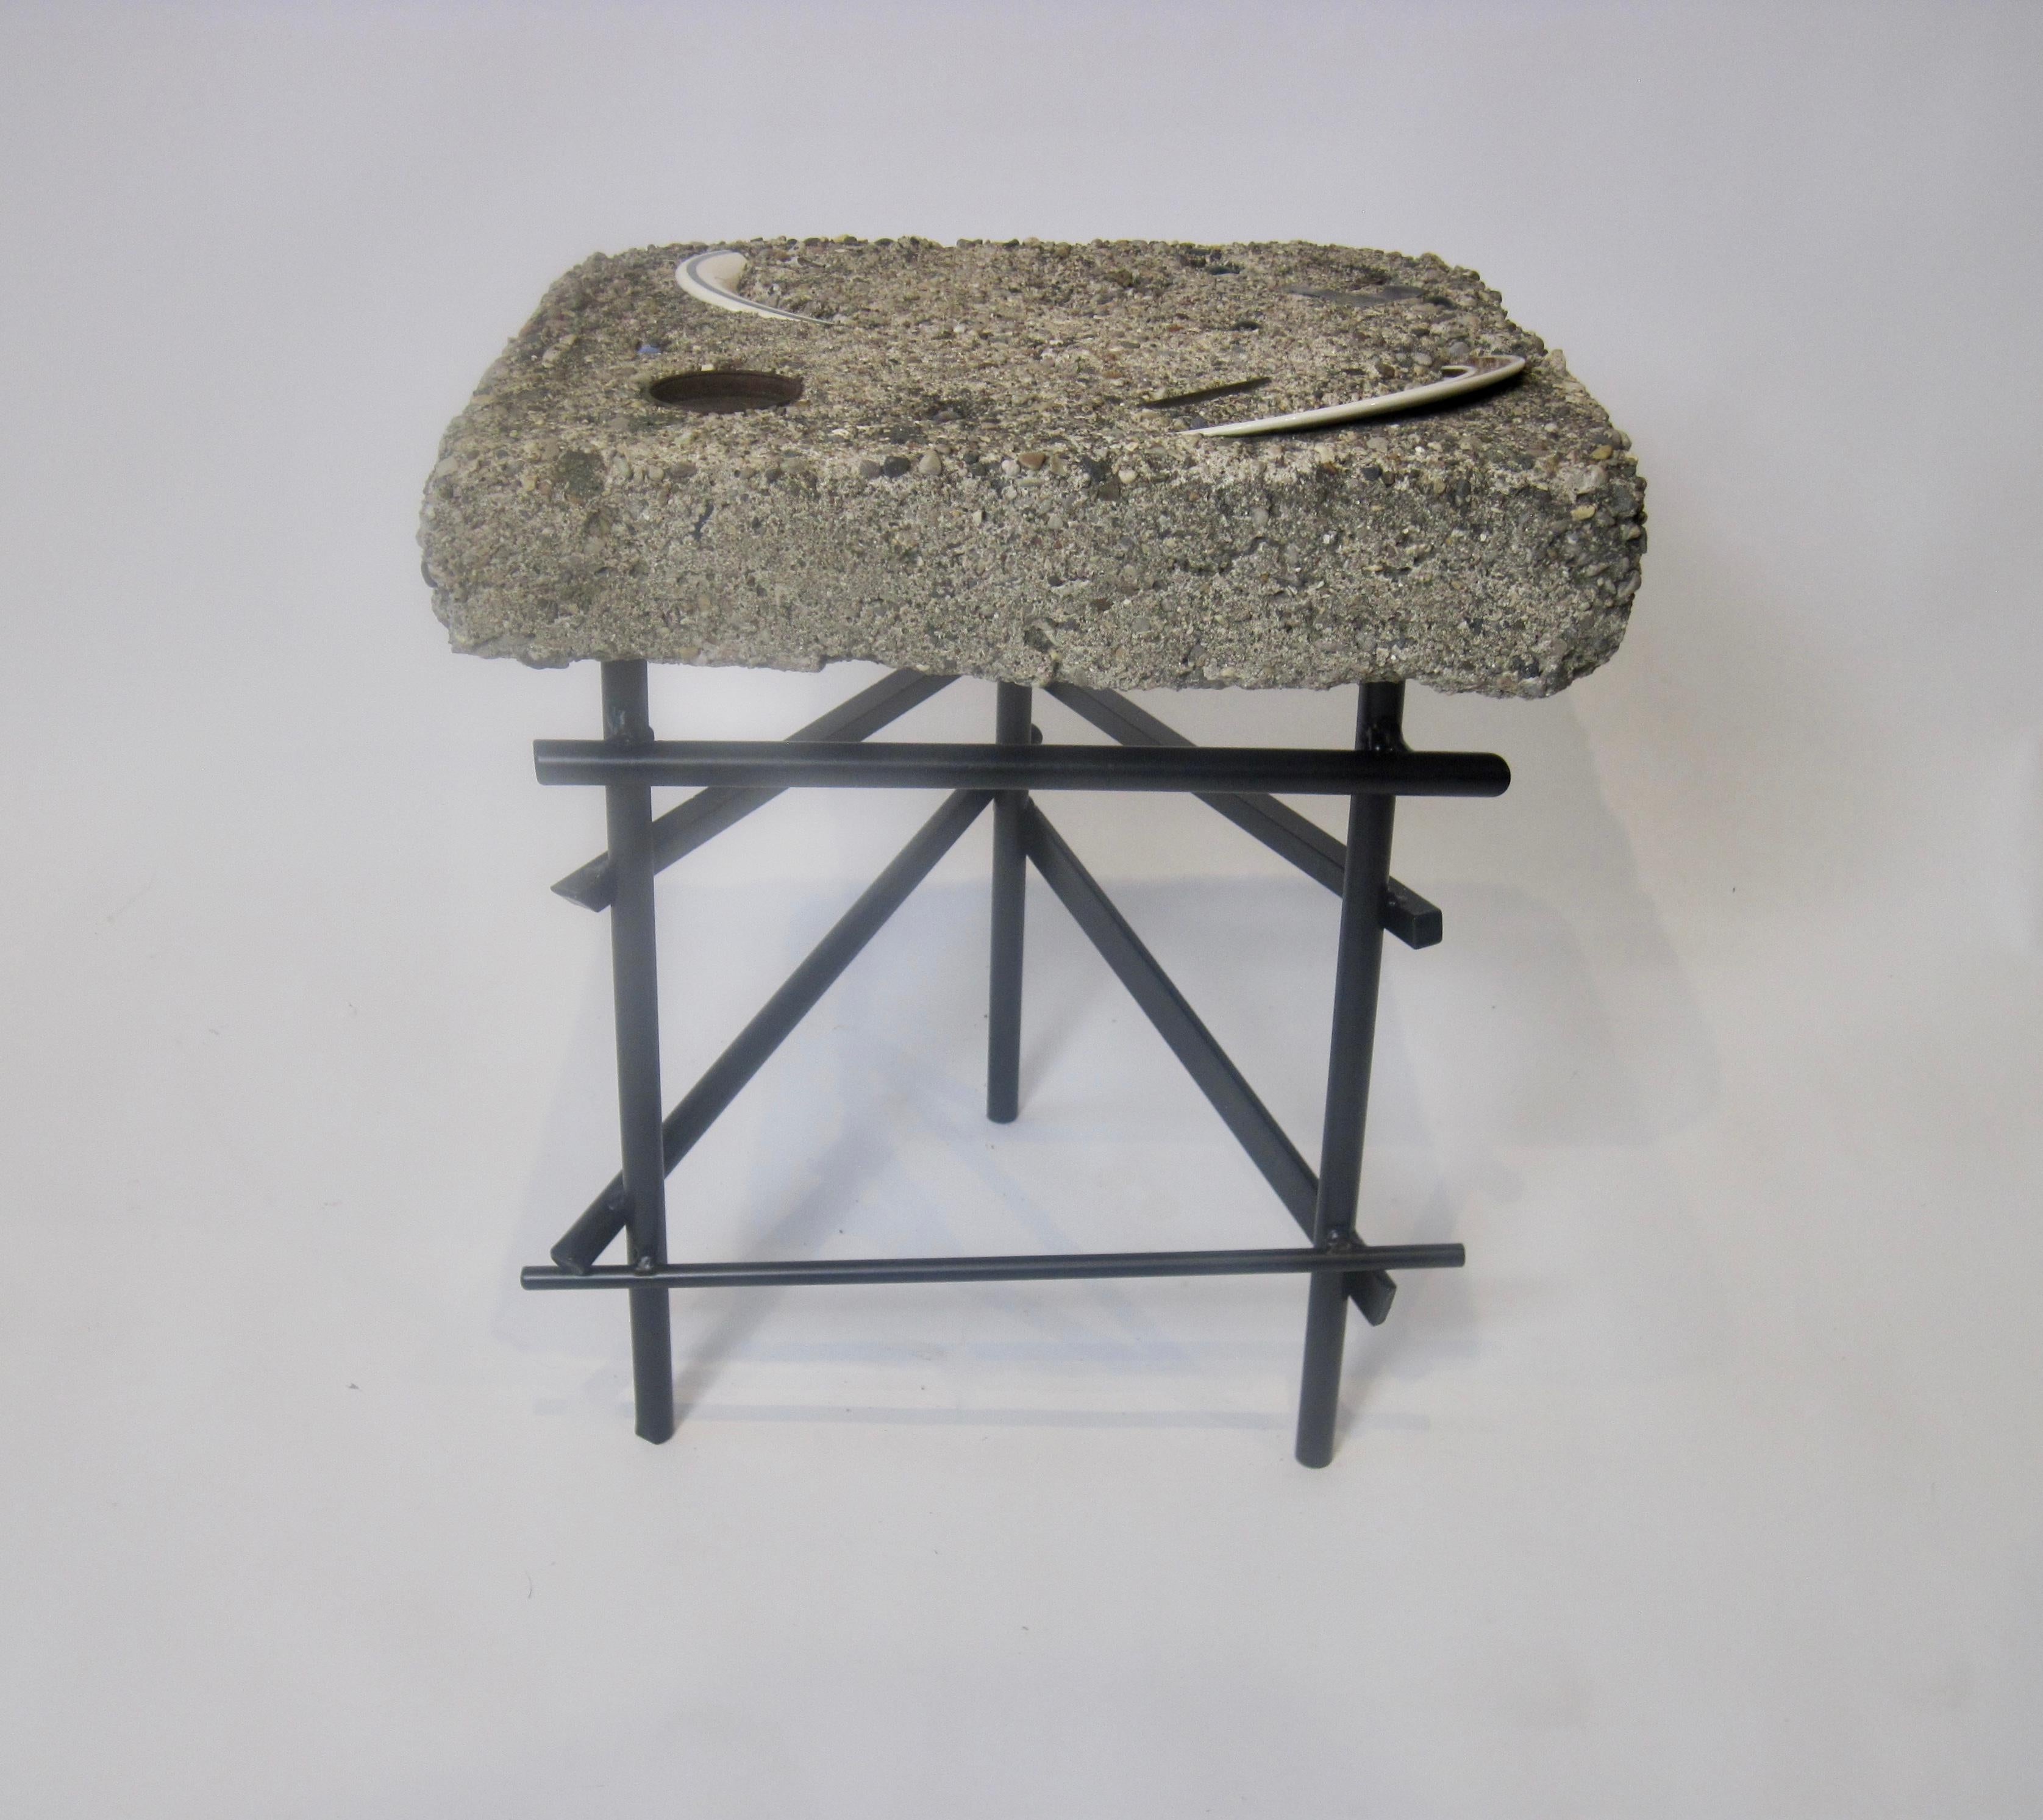 Céramique Studio Made Found Objects Cement Table with Sculptural Steel Base (Table en ciment avec base sculpturale en acier)  en vente